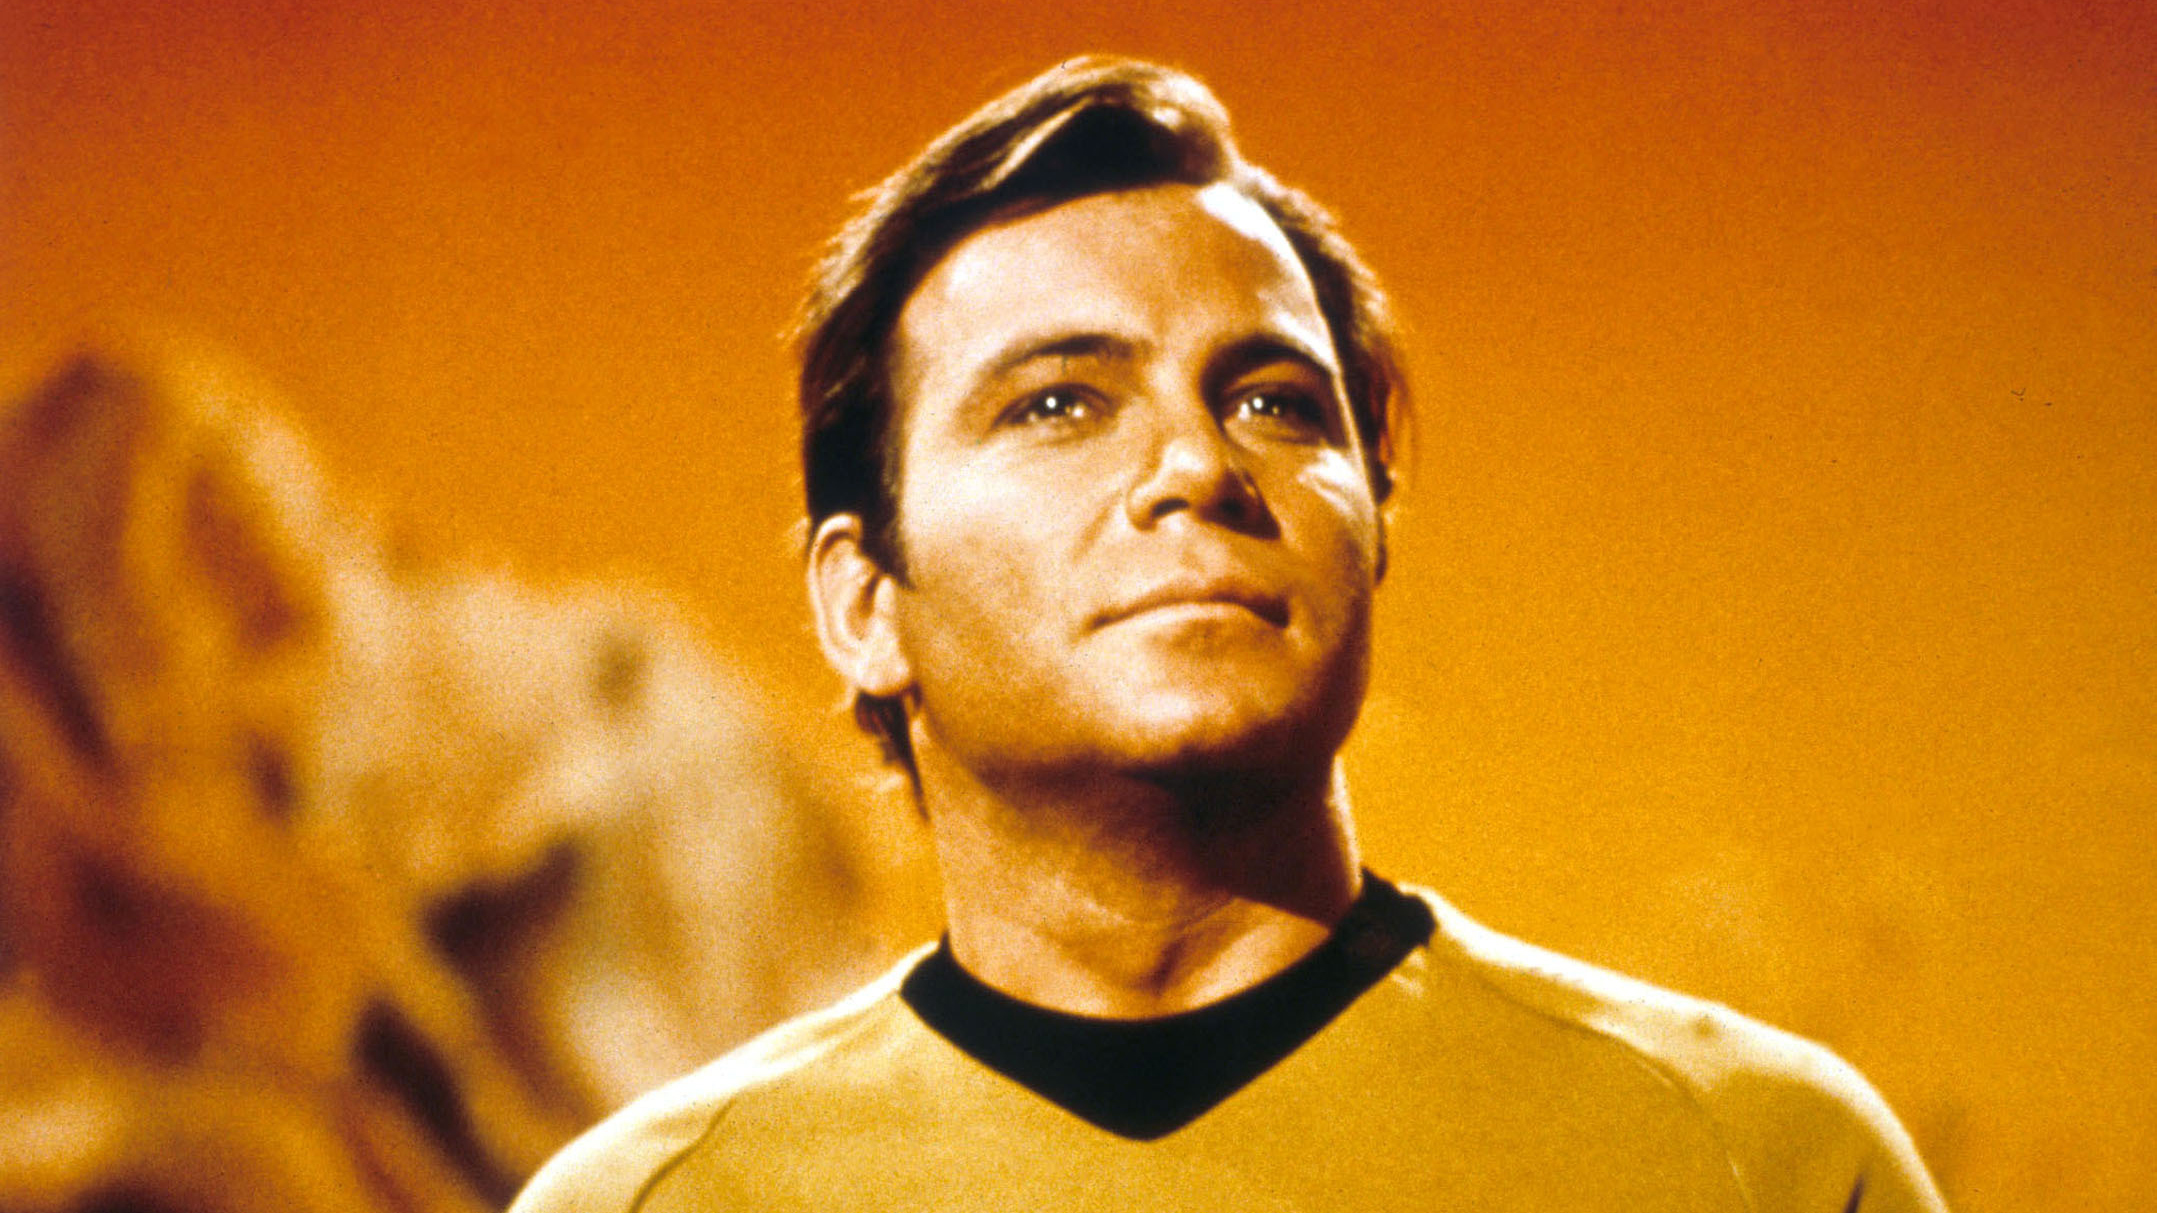 Eine Szene aus "Star Trek" mit William Shatner als Captain Kirk. | picture-alliance / Mary Evans Pi